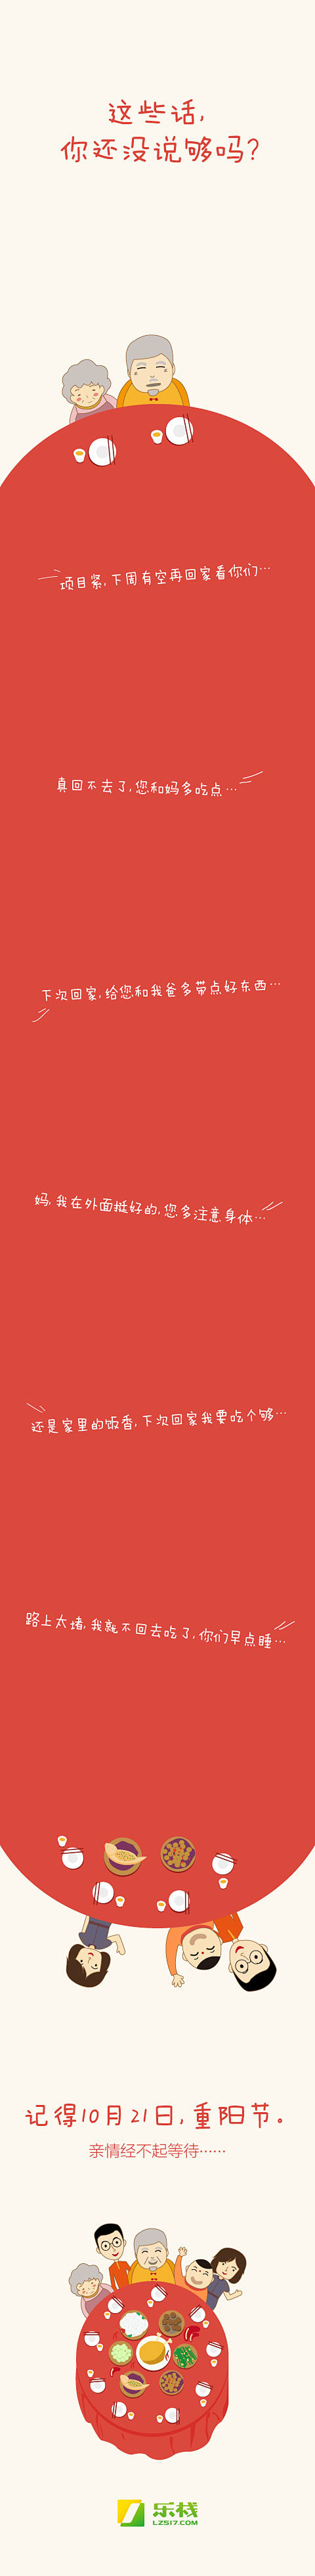 重阳节微博海报